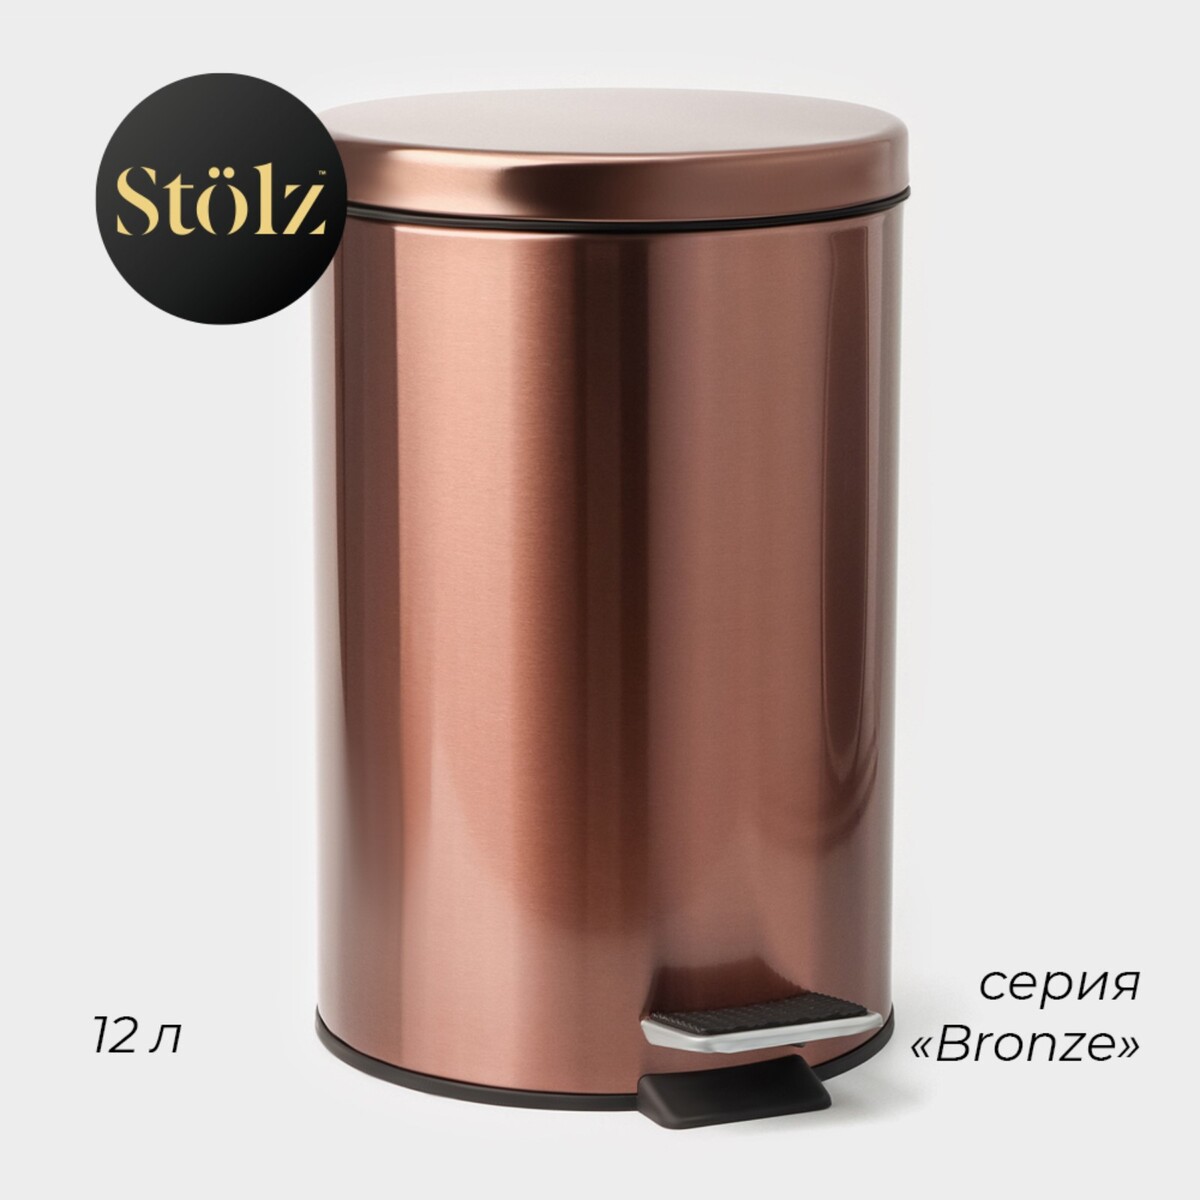 Ведро мусорное с педалью штольц stölz, 12 л, нержавеющая сталь, цвет бронзовый